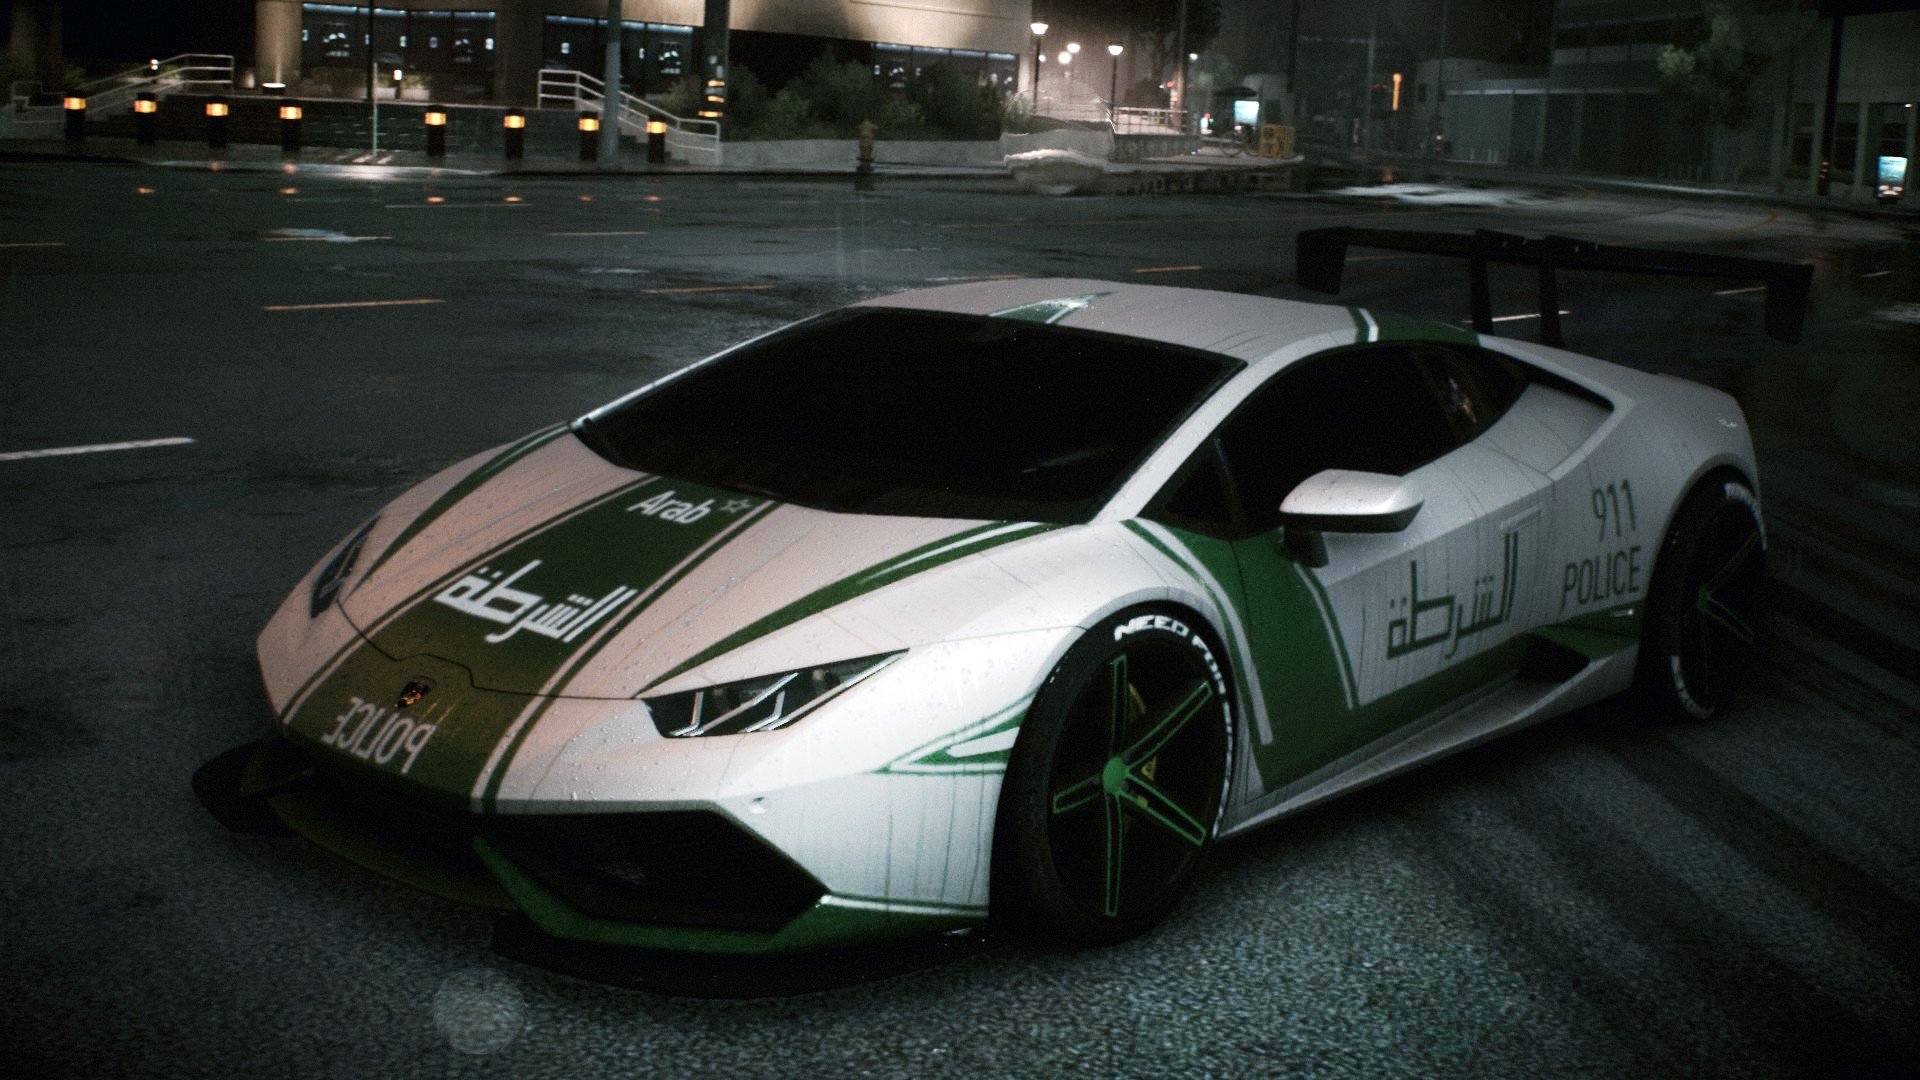 police, Arabian, Lamborghini, Dubai, Need for Speed, Street, Car, Lamborghini Huracan LP 610 4 Wallpaper